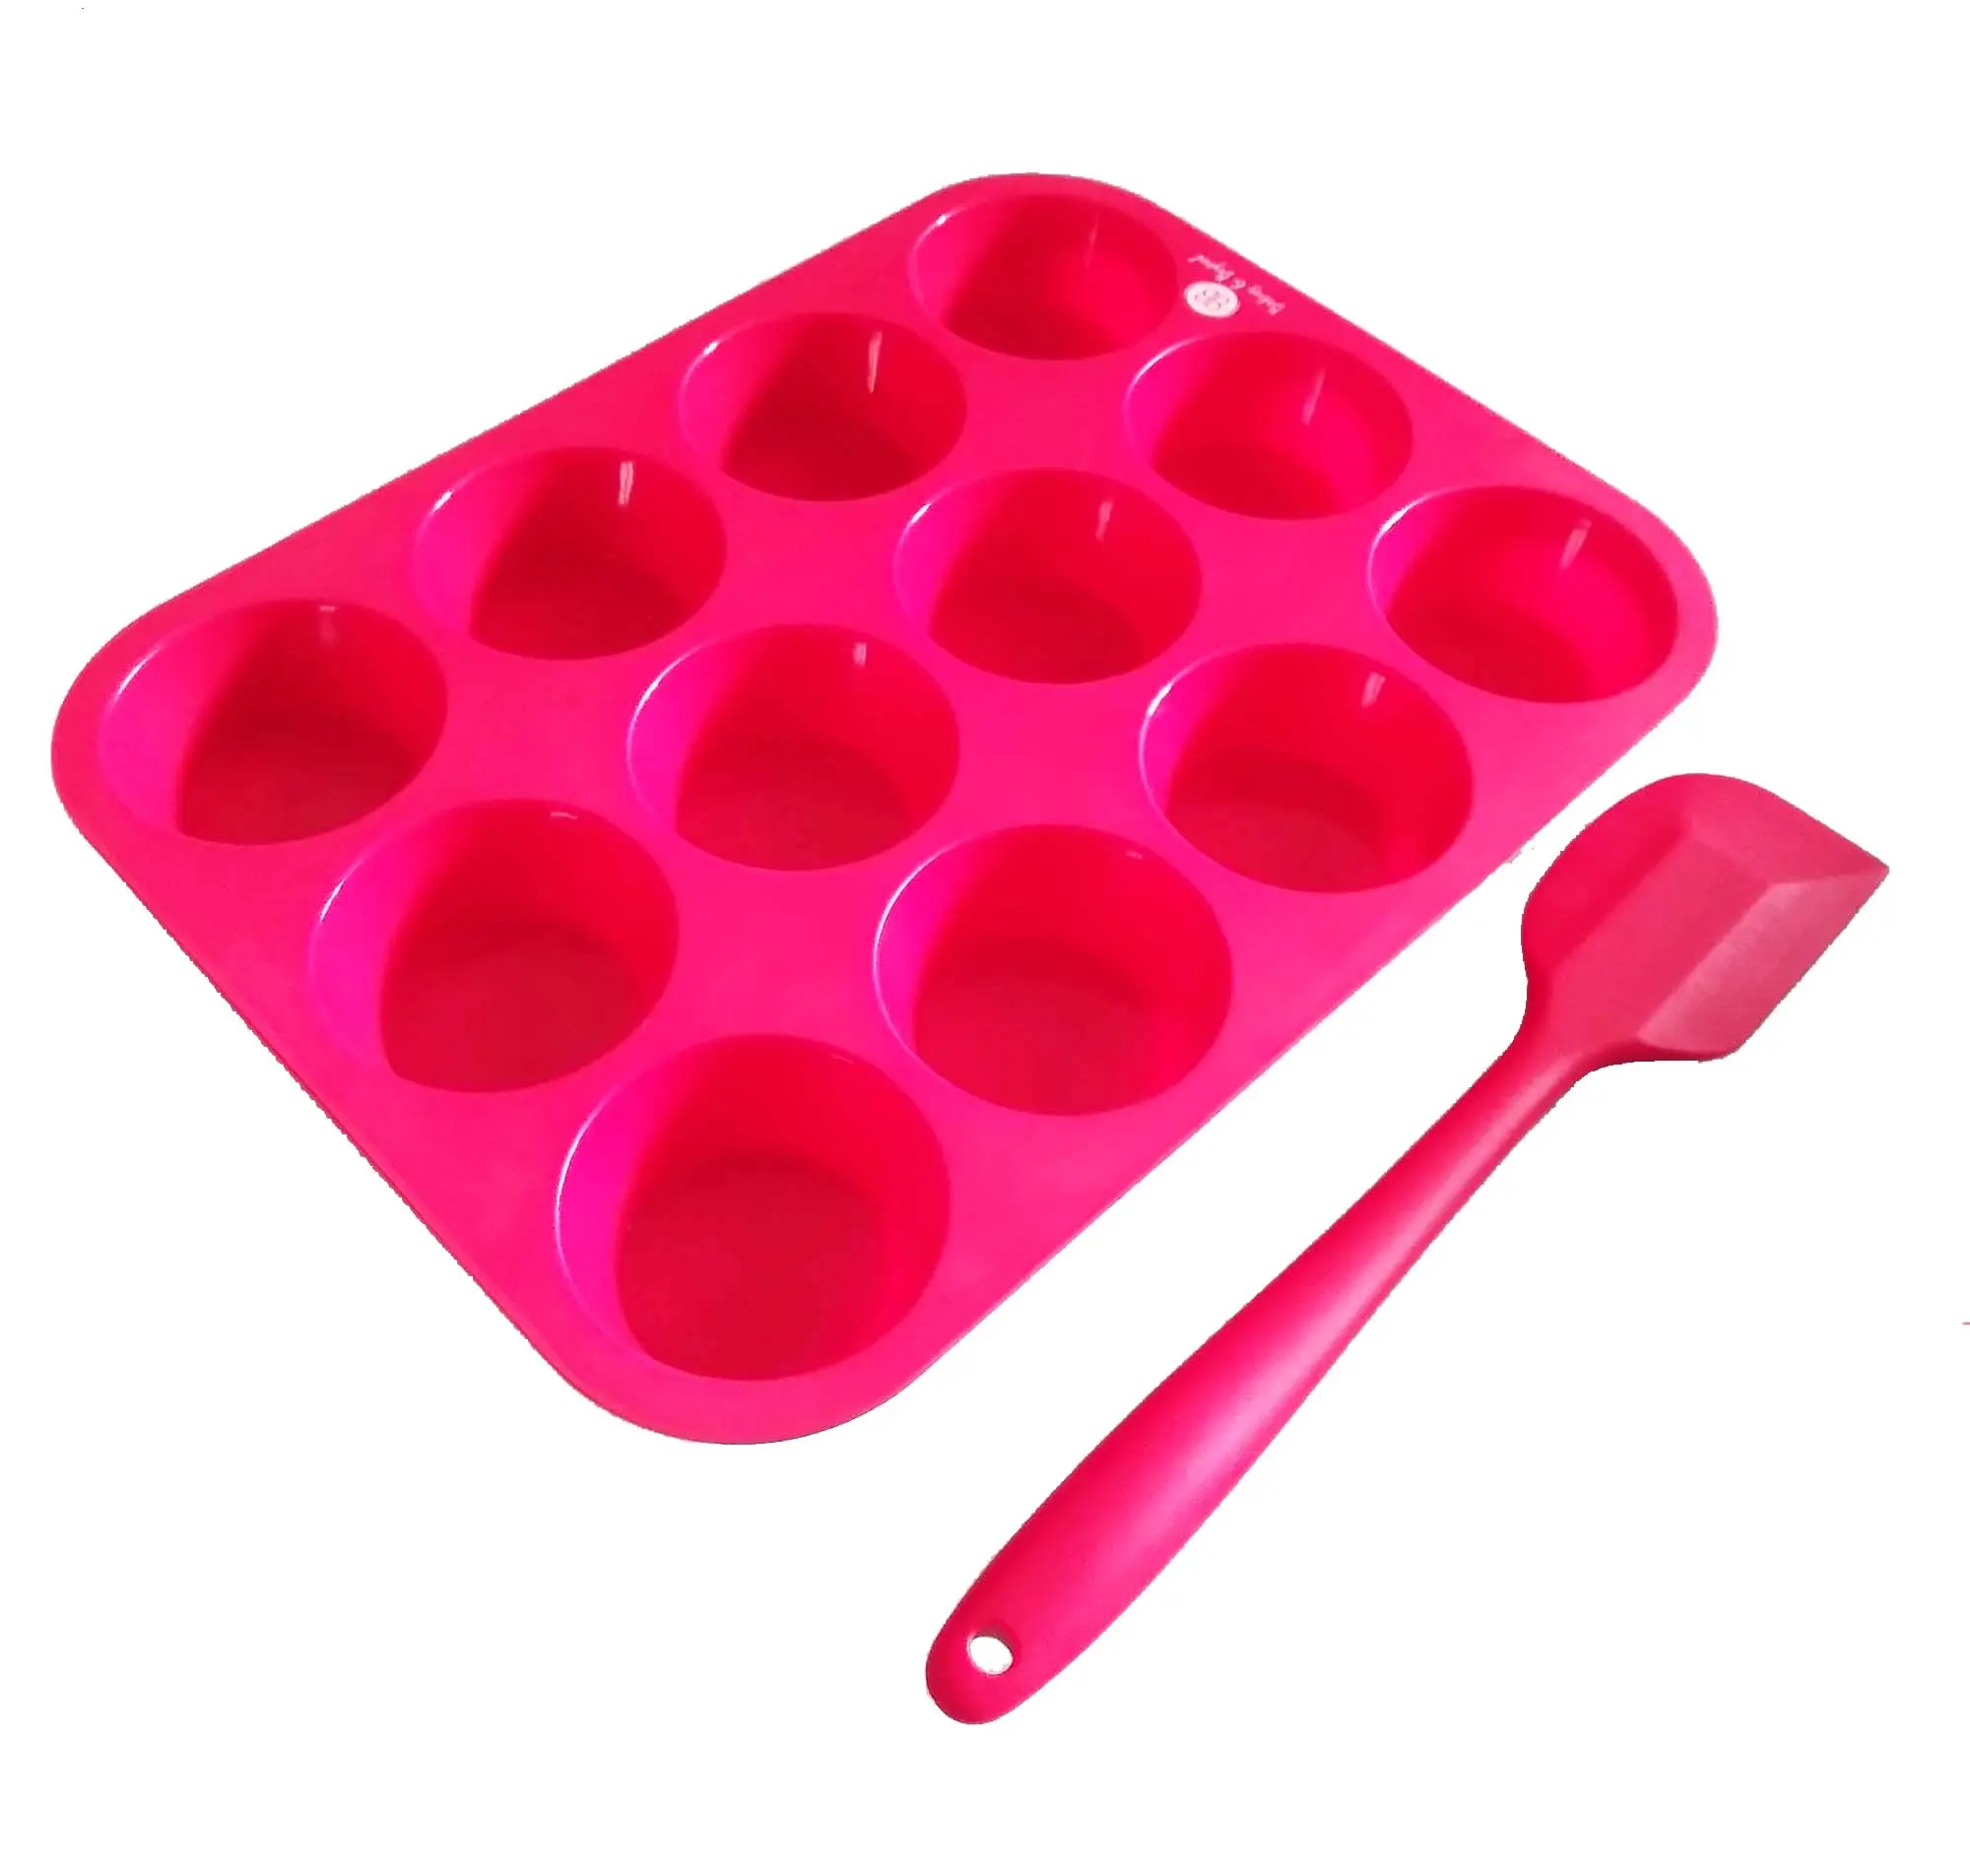 Hoja de papel para hornear pastel tazas Copa muffin de silicona Muffin Cupcake para hornear Pan en rojo.